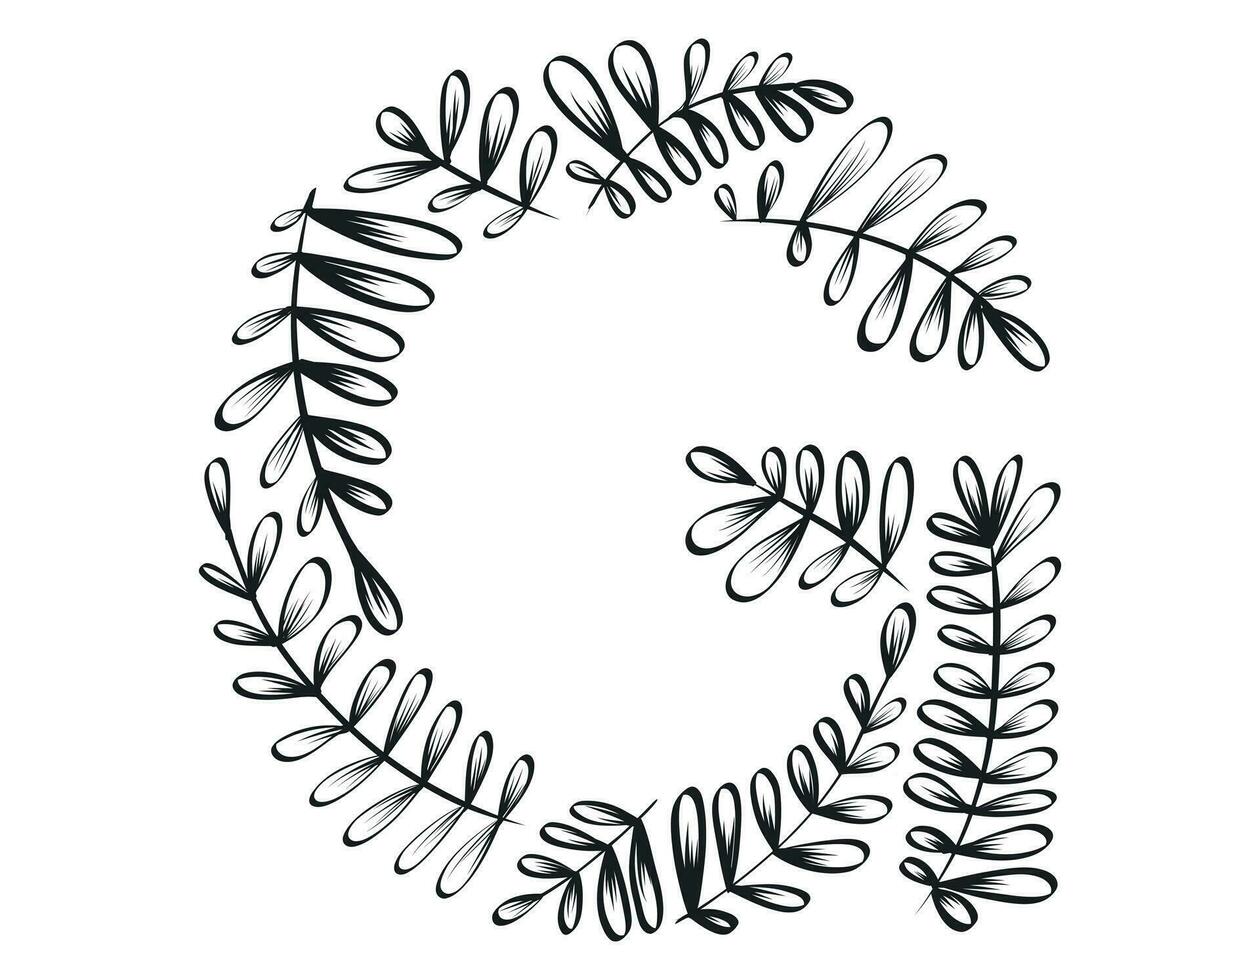 isolerat vektor dekorativ brev g av de latin alfabet. botanisk font, svart skiss grenar och löv.